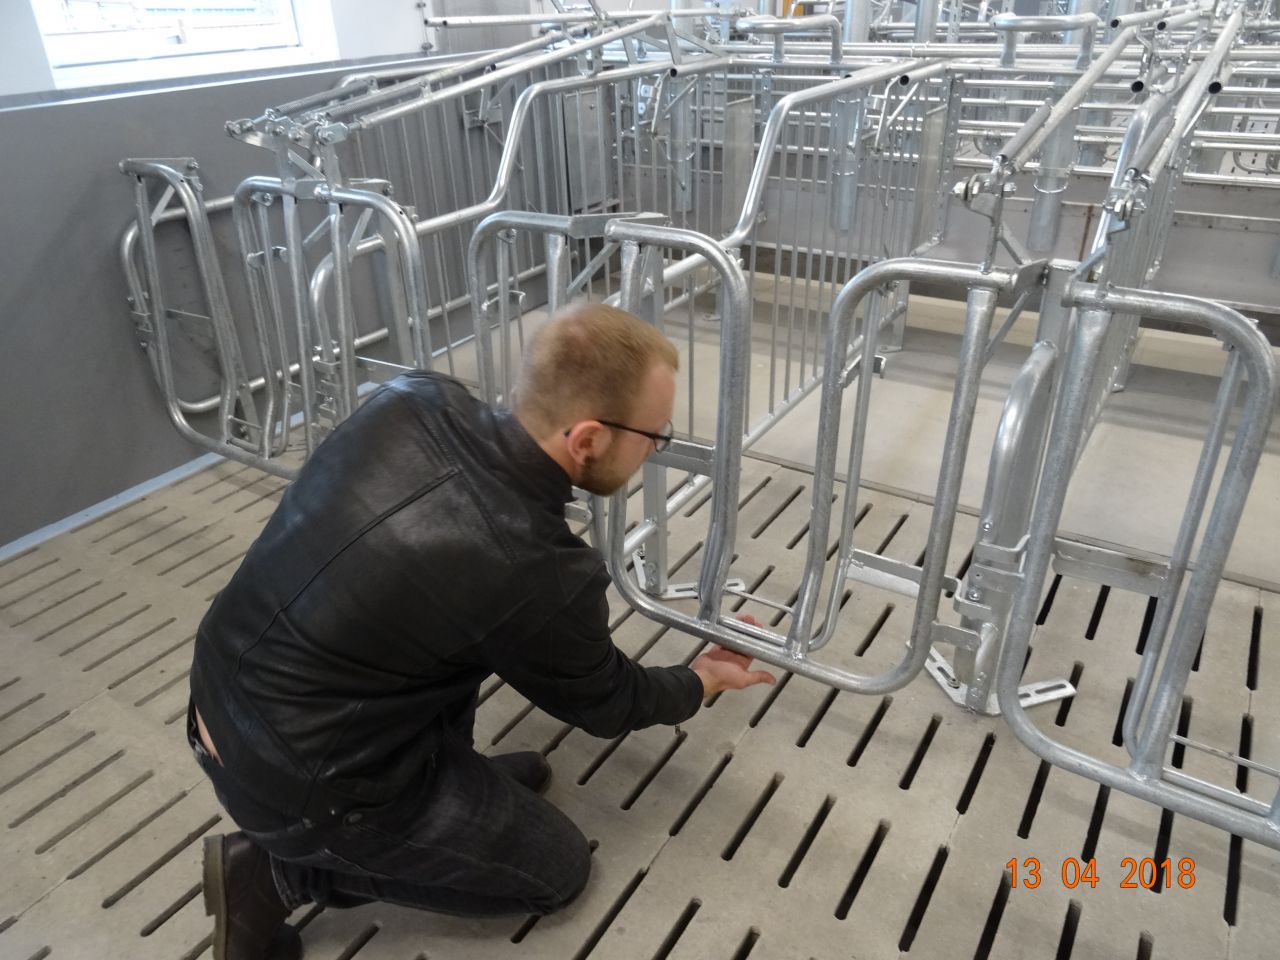 Philipp Franz erklärt, wie der Selbstschutzkorb im Deckbereich funktioniert
© IGS